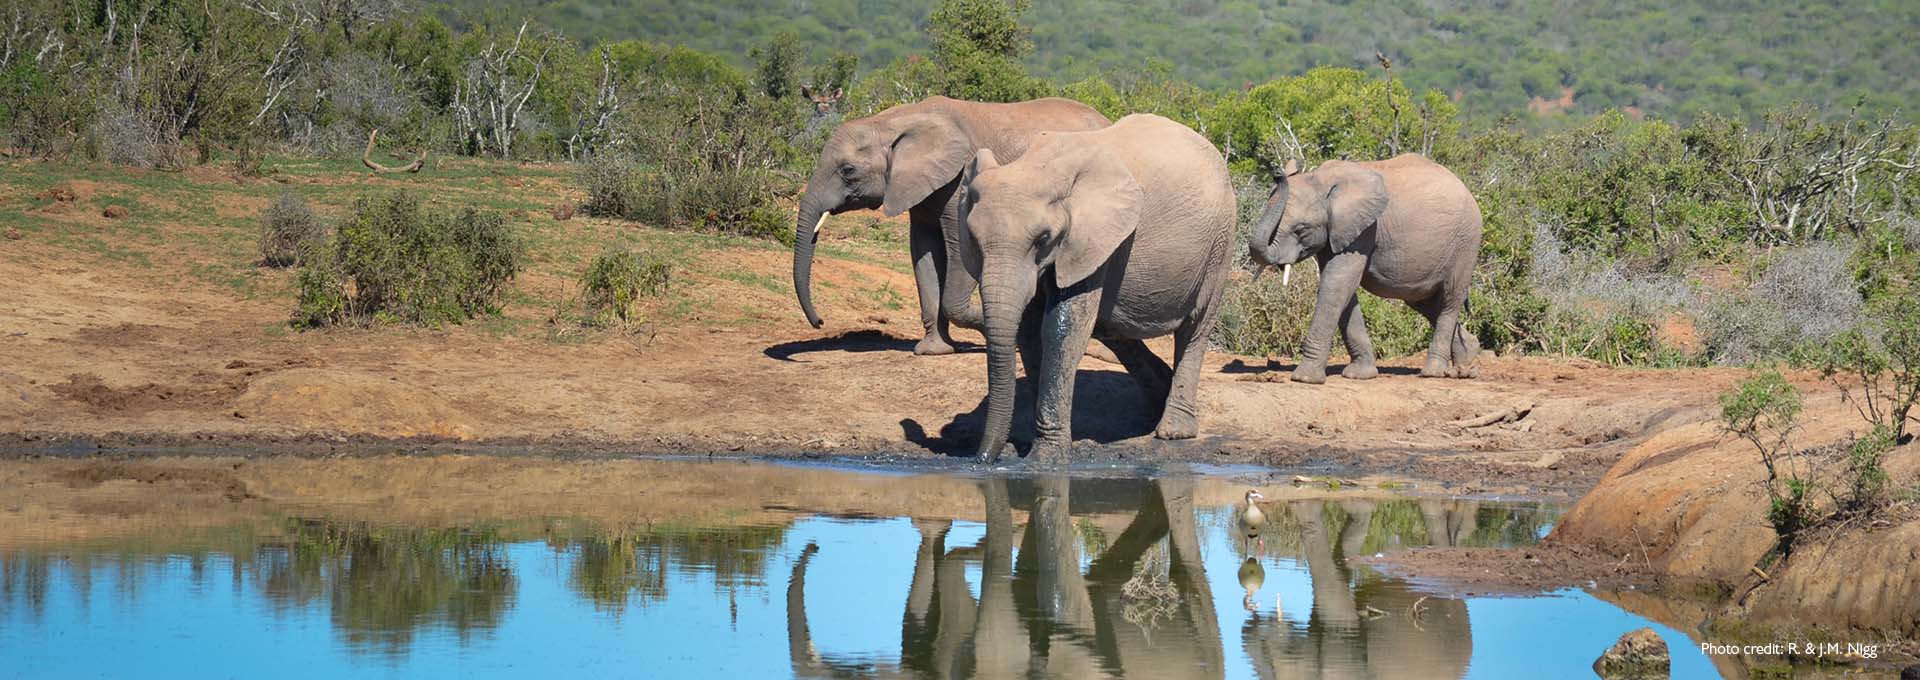 Immagine di una famiglia di elefanti in un piccolo lago con cespugli verdi sullo sfondo, fotografata da utenti di apparecchi acustici Bernafon Alpha